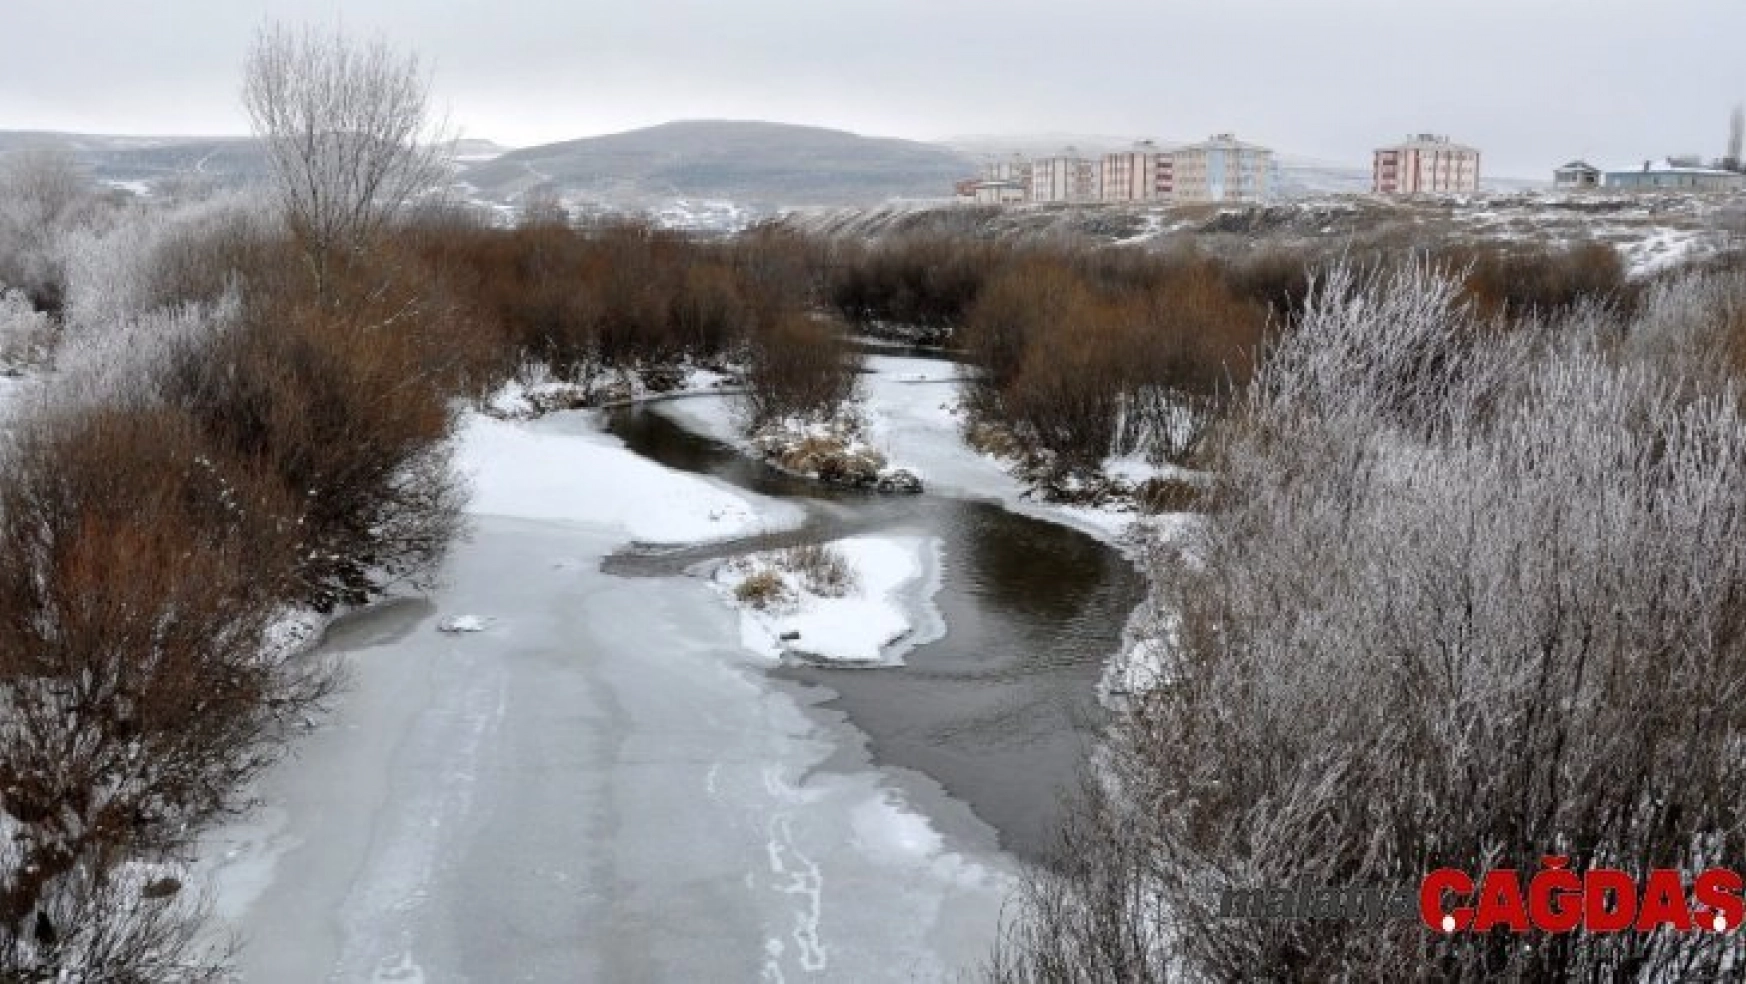 Doğu'da en soğuk yerleşim yeri Göle oldu: Eksi 25